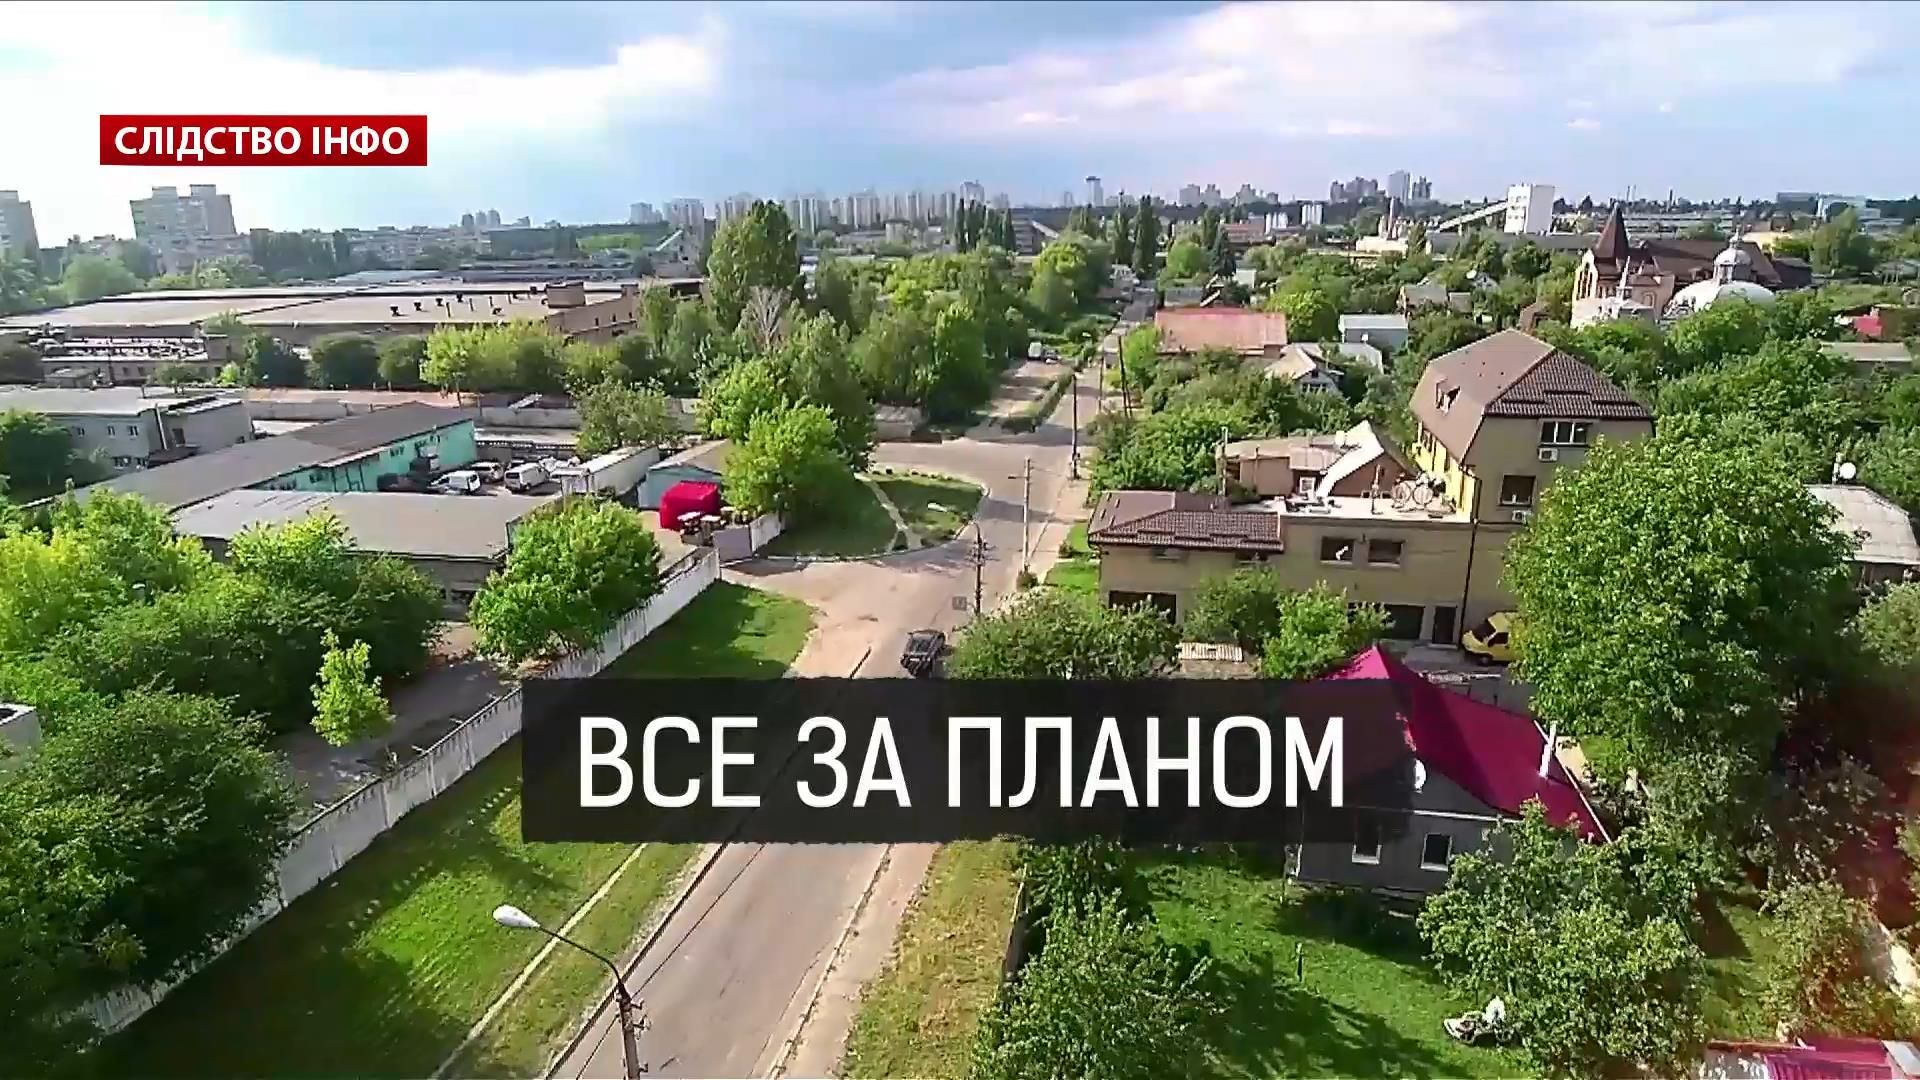 Скандальні київські забудови: як розробляється план міста проти волі киян